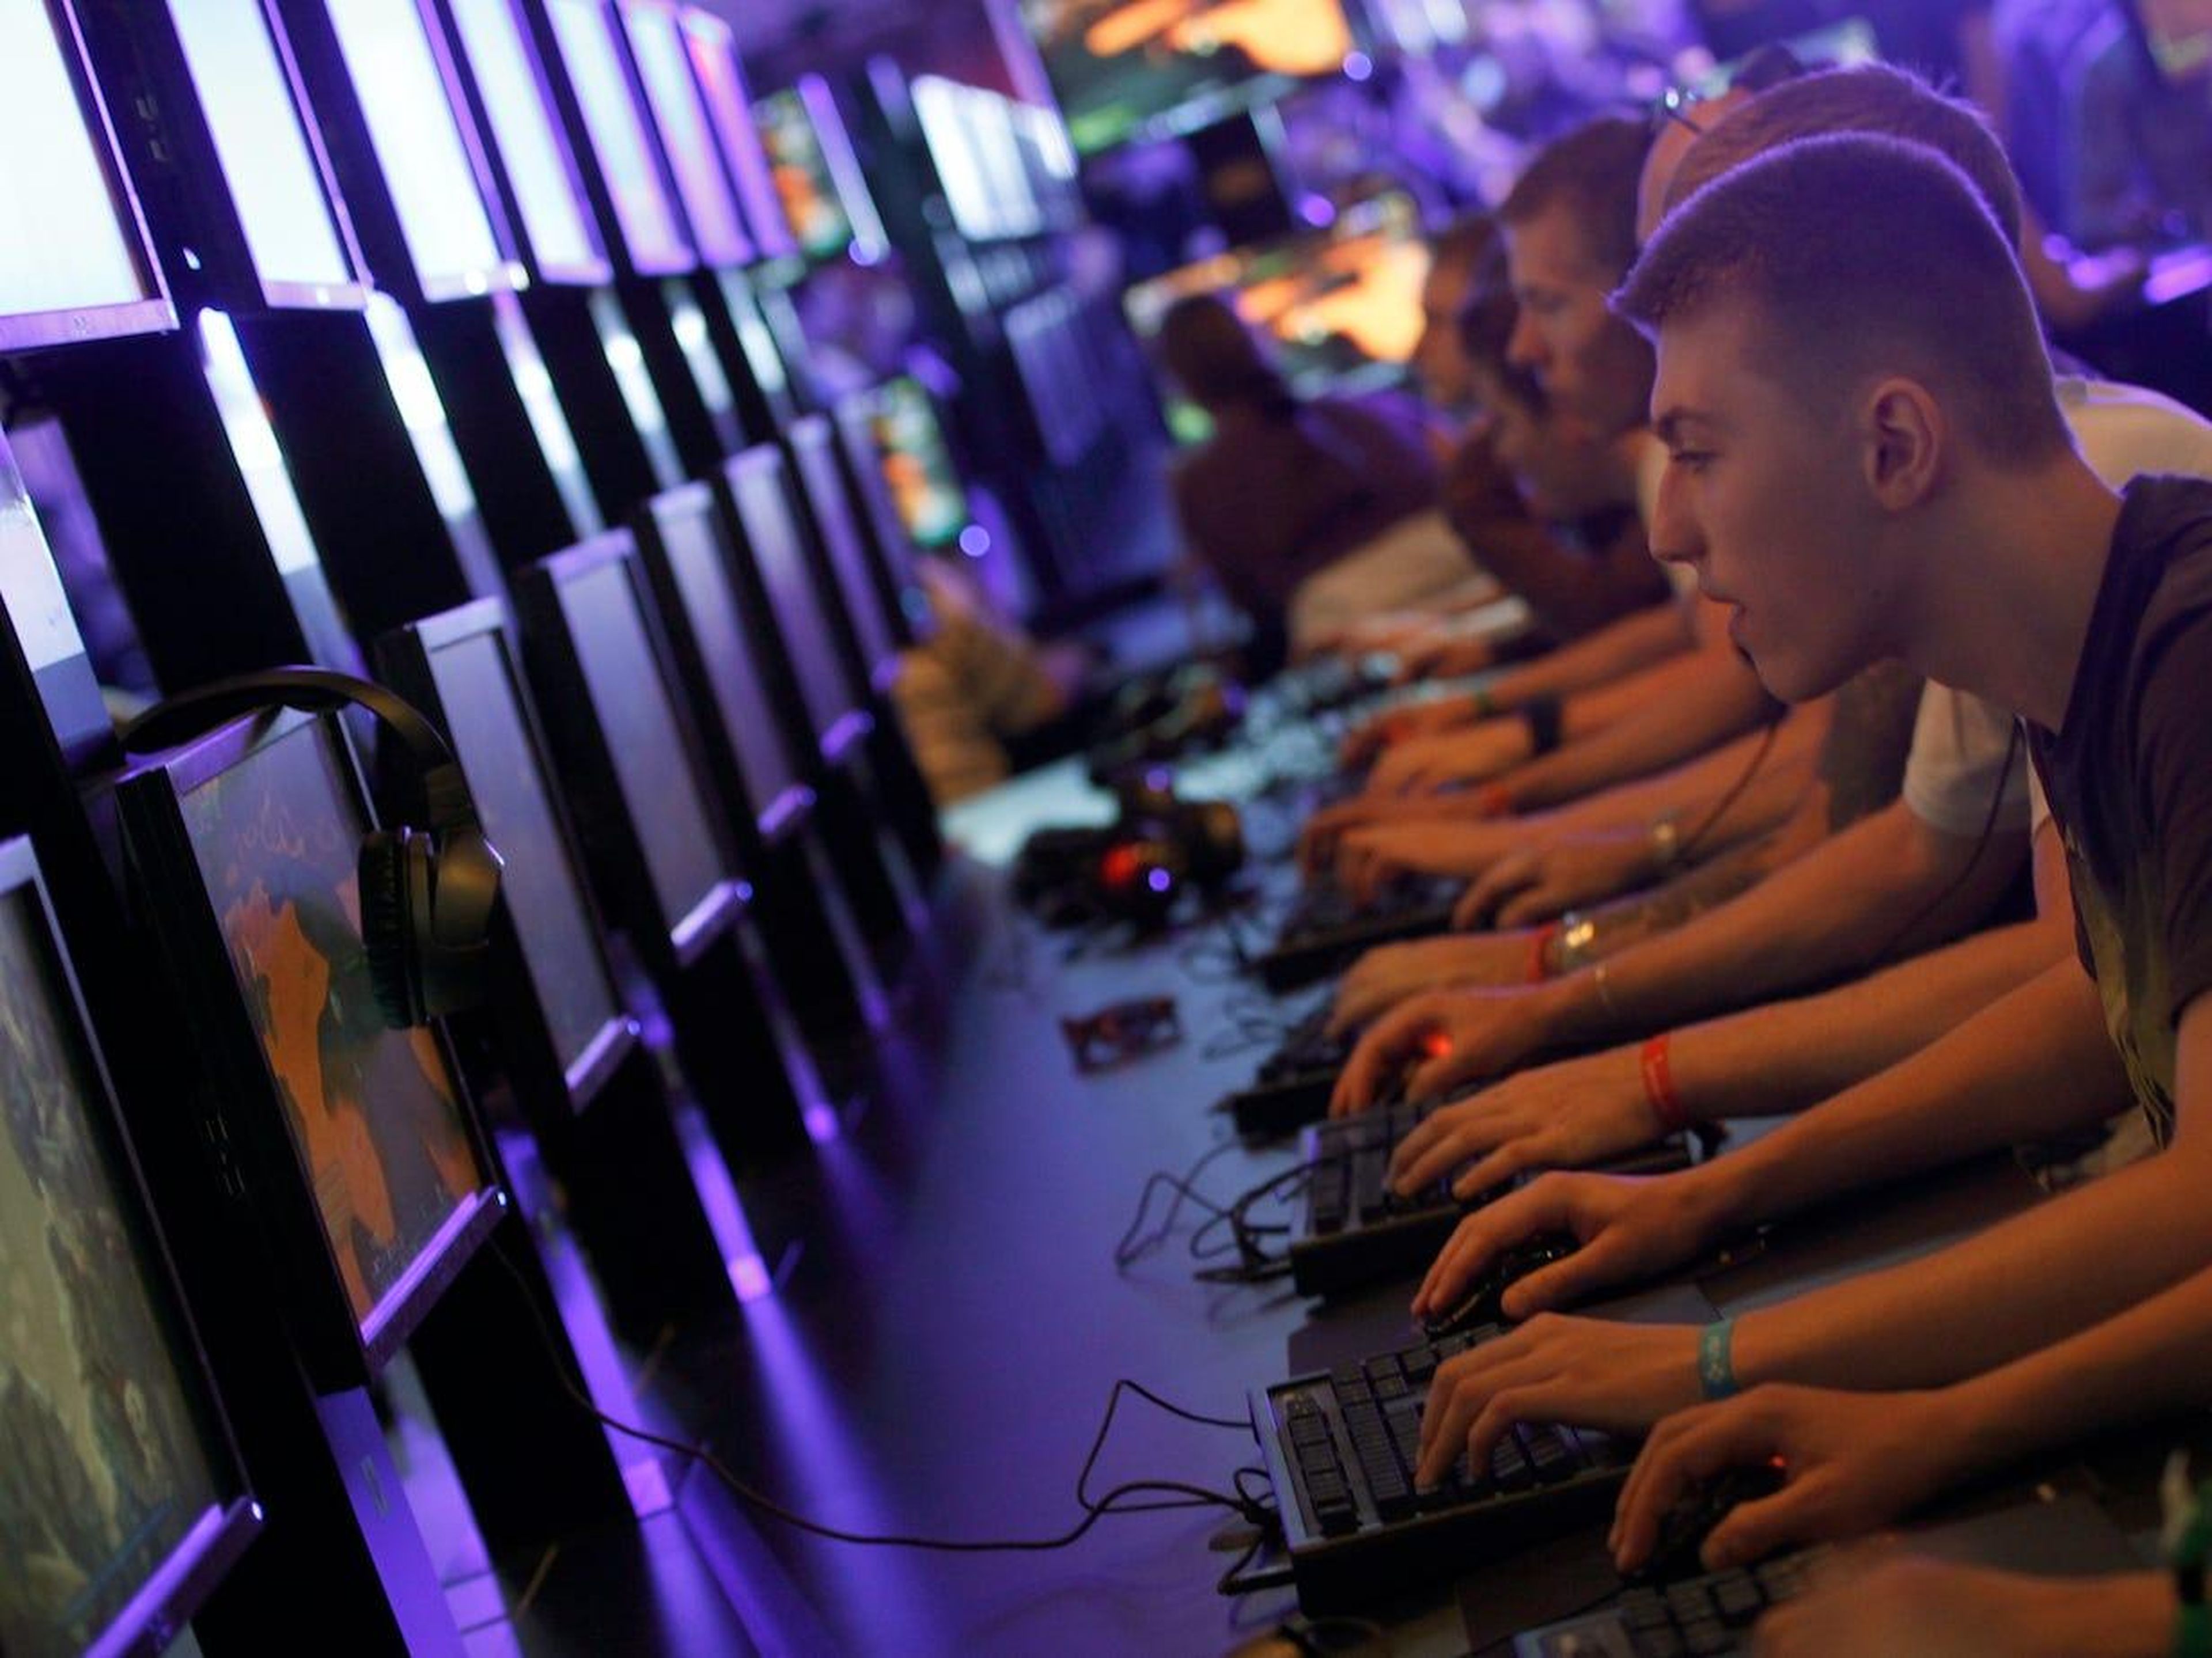 Visitantes de la convención Gamescom, la feria de videojuegos más grande de Europa, probando nuevos juegos.